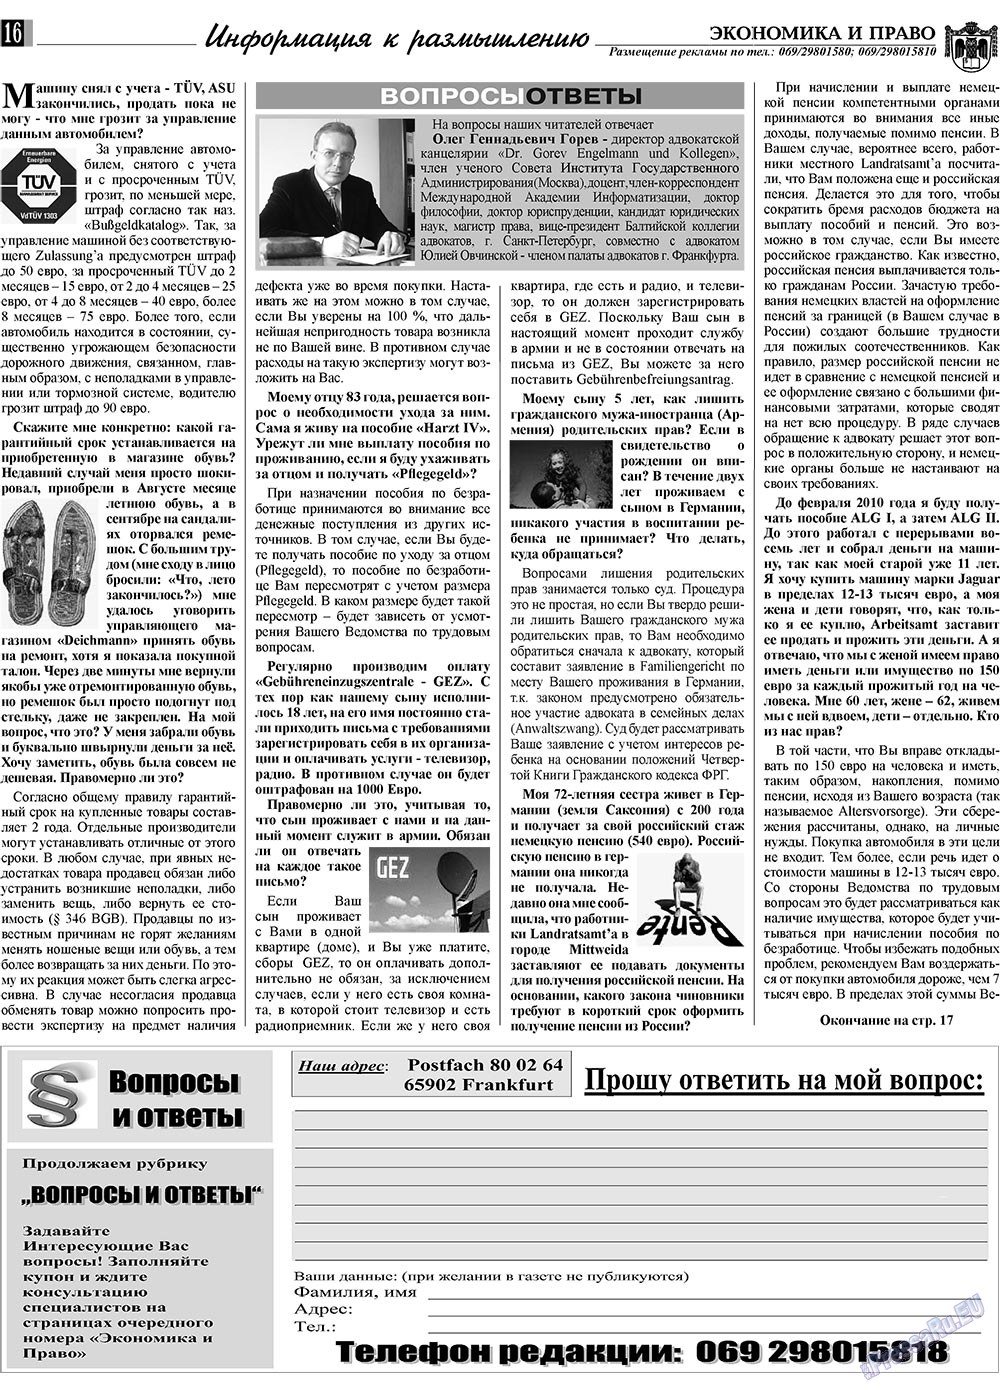 Экономика и право, газета. 2010 №1 стр.16